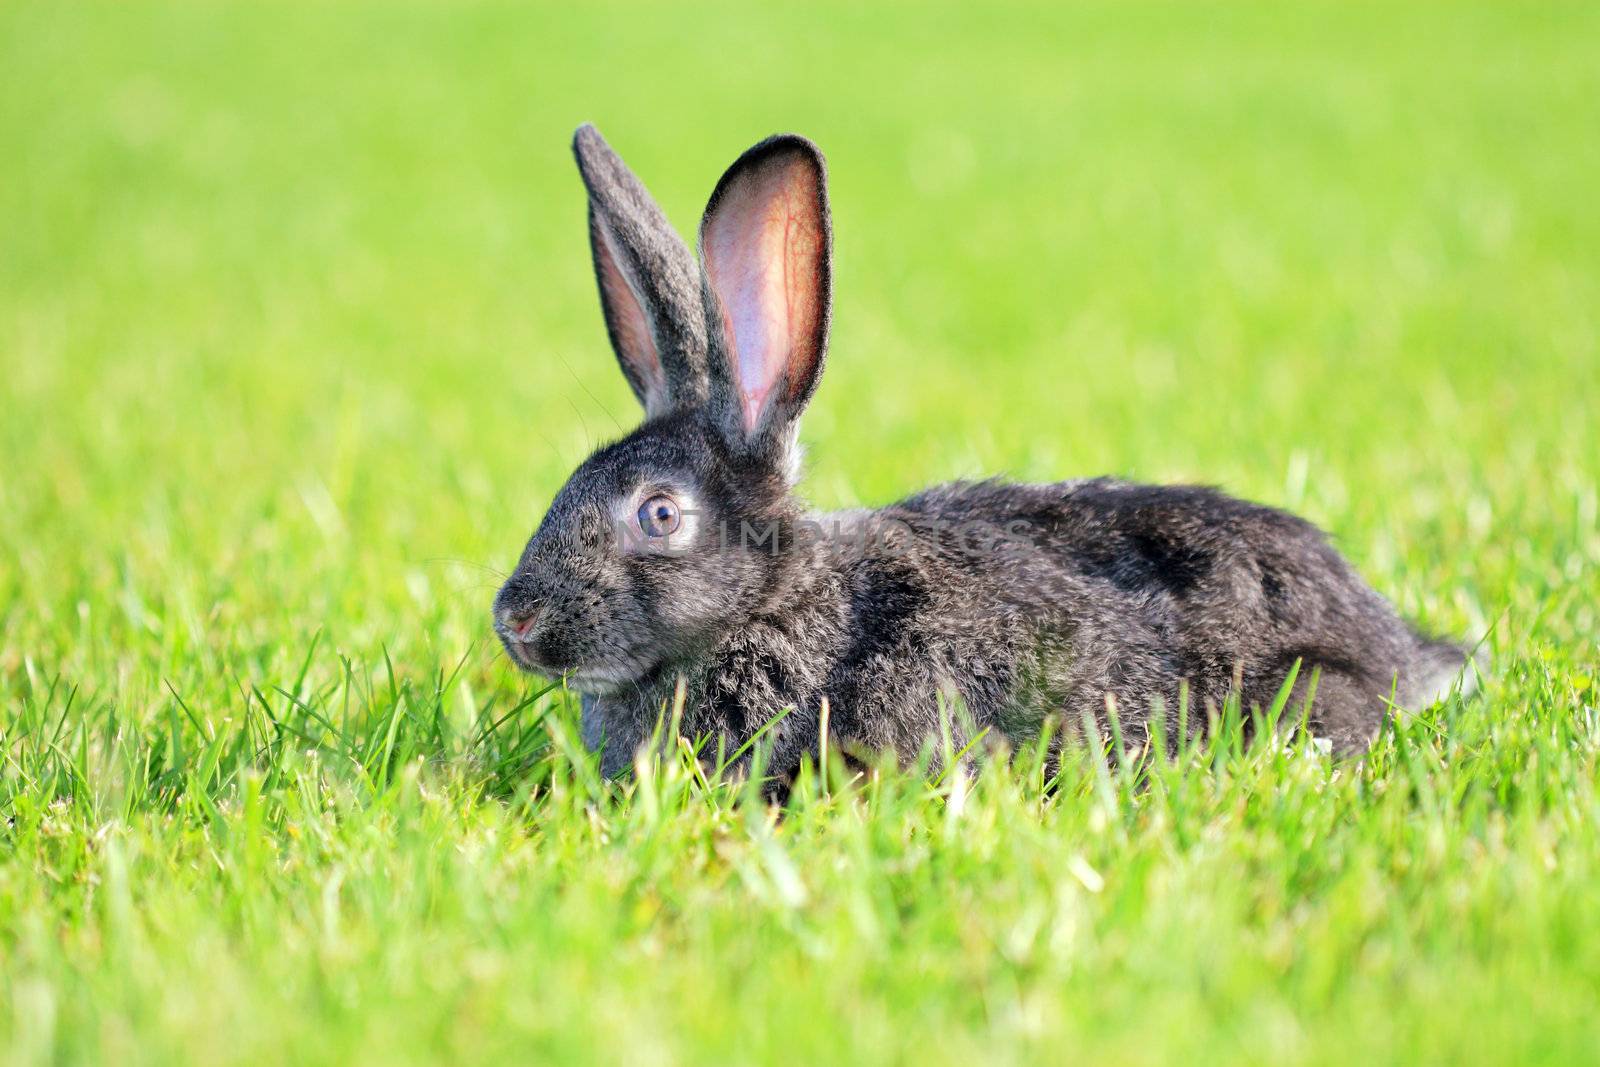 dark gray rabbit lying in a meadow